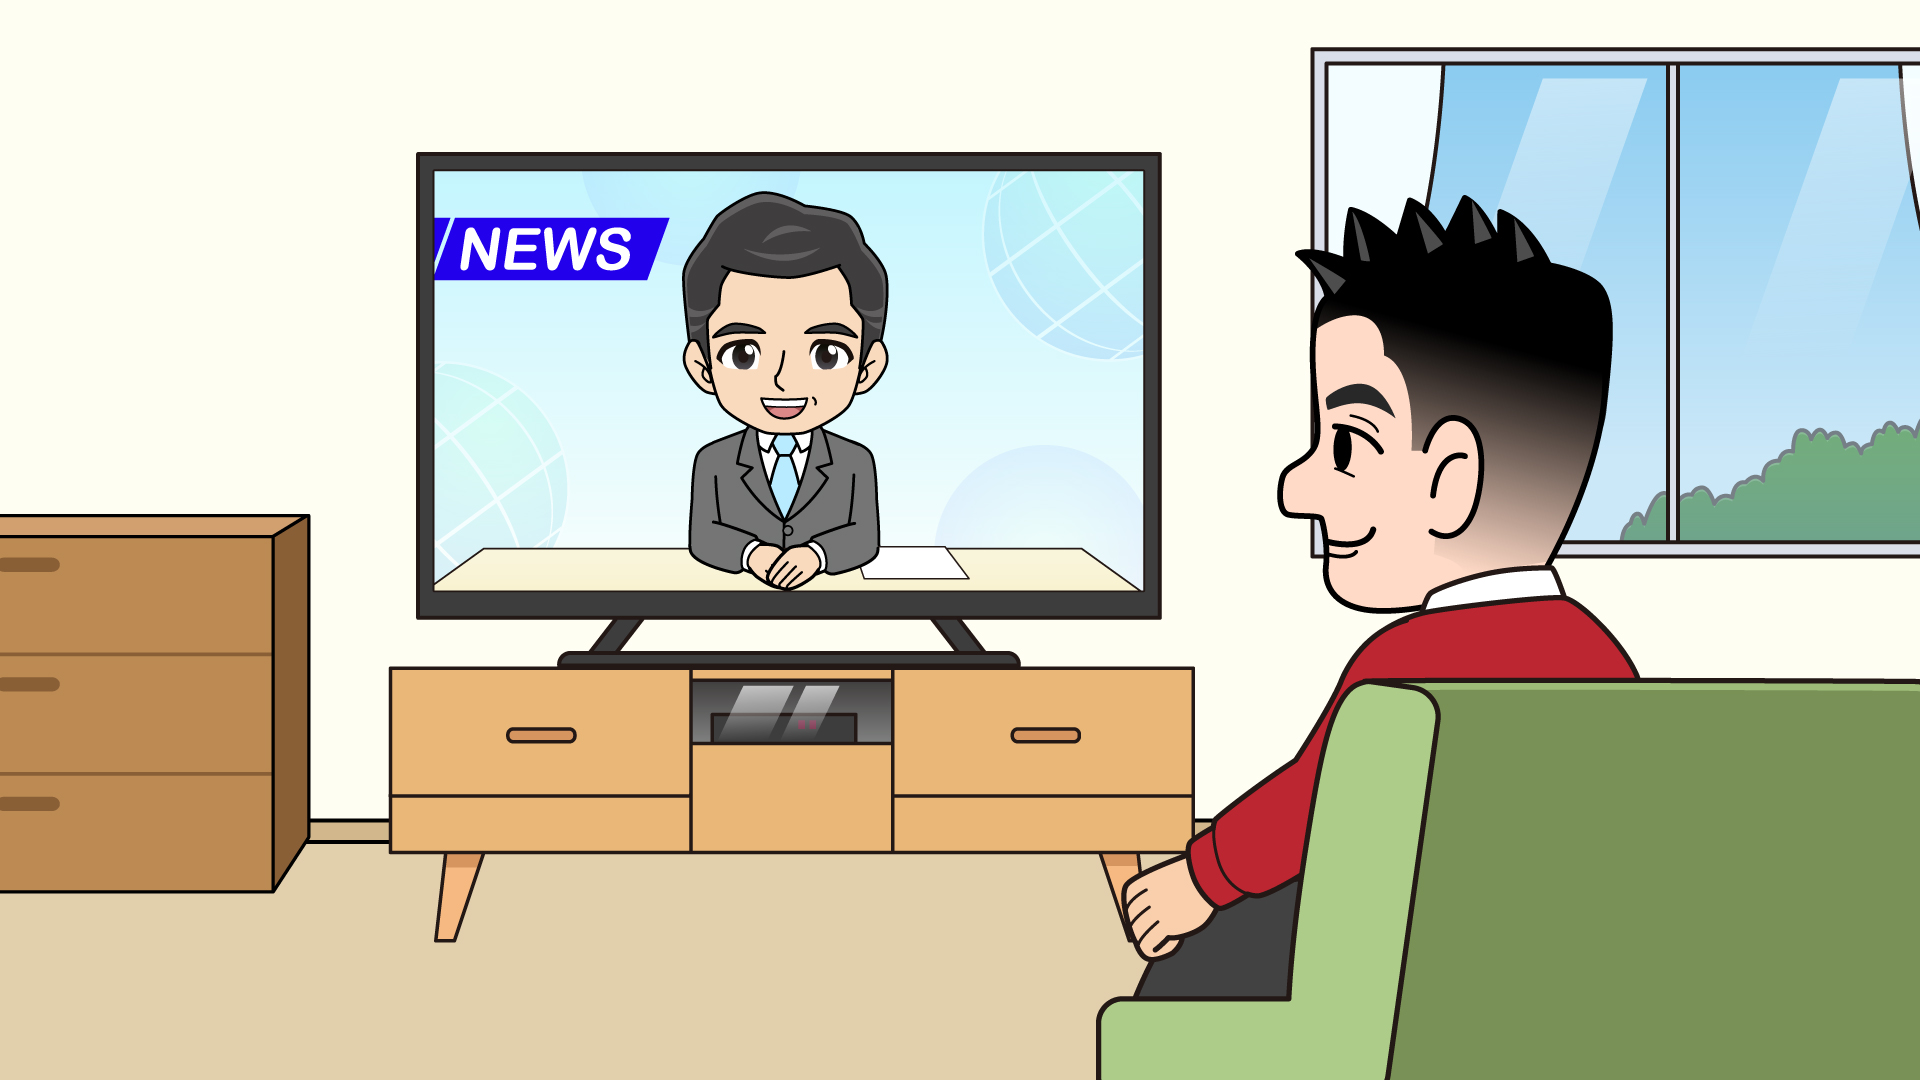 テレビのニュースを見る男性